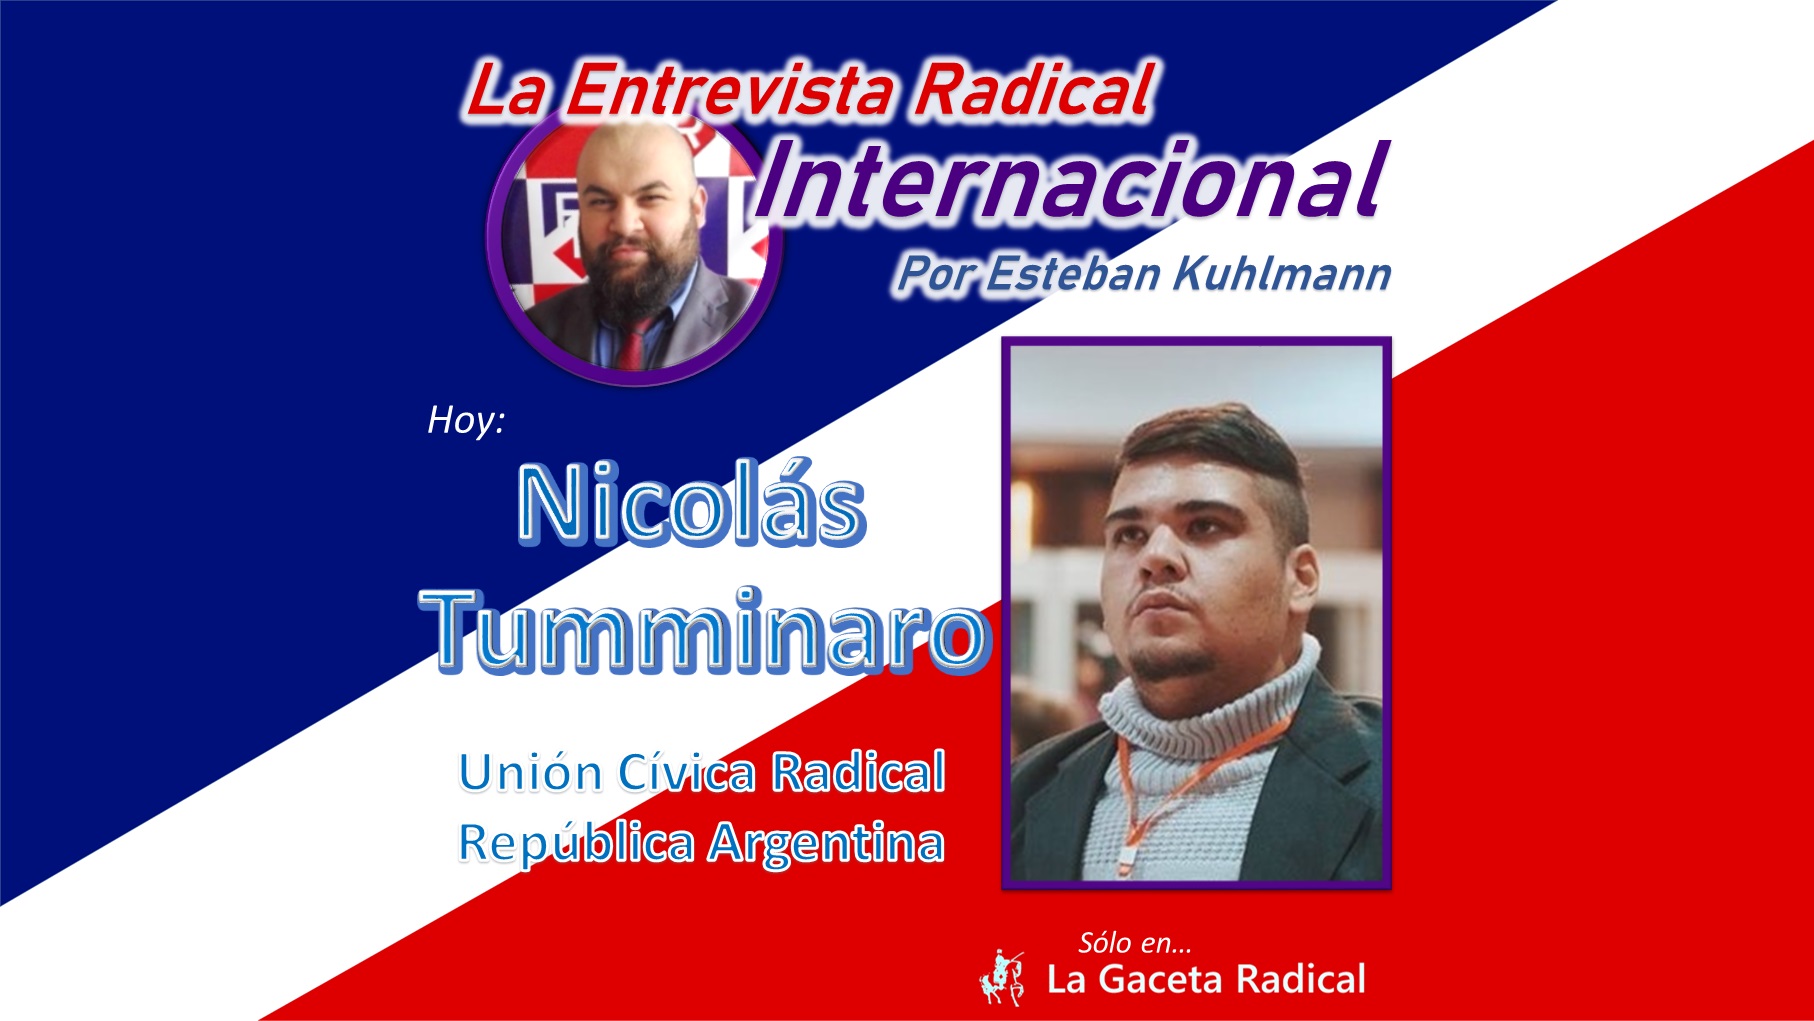 Entrevista a Nicolás Tumminaro, joven dirigente político de la Unión Cívica Radical de Argentina